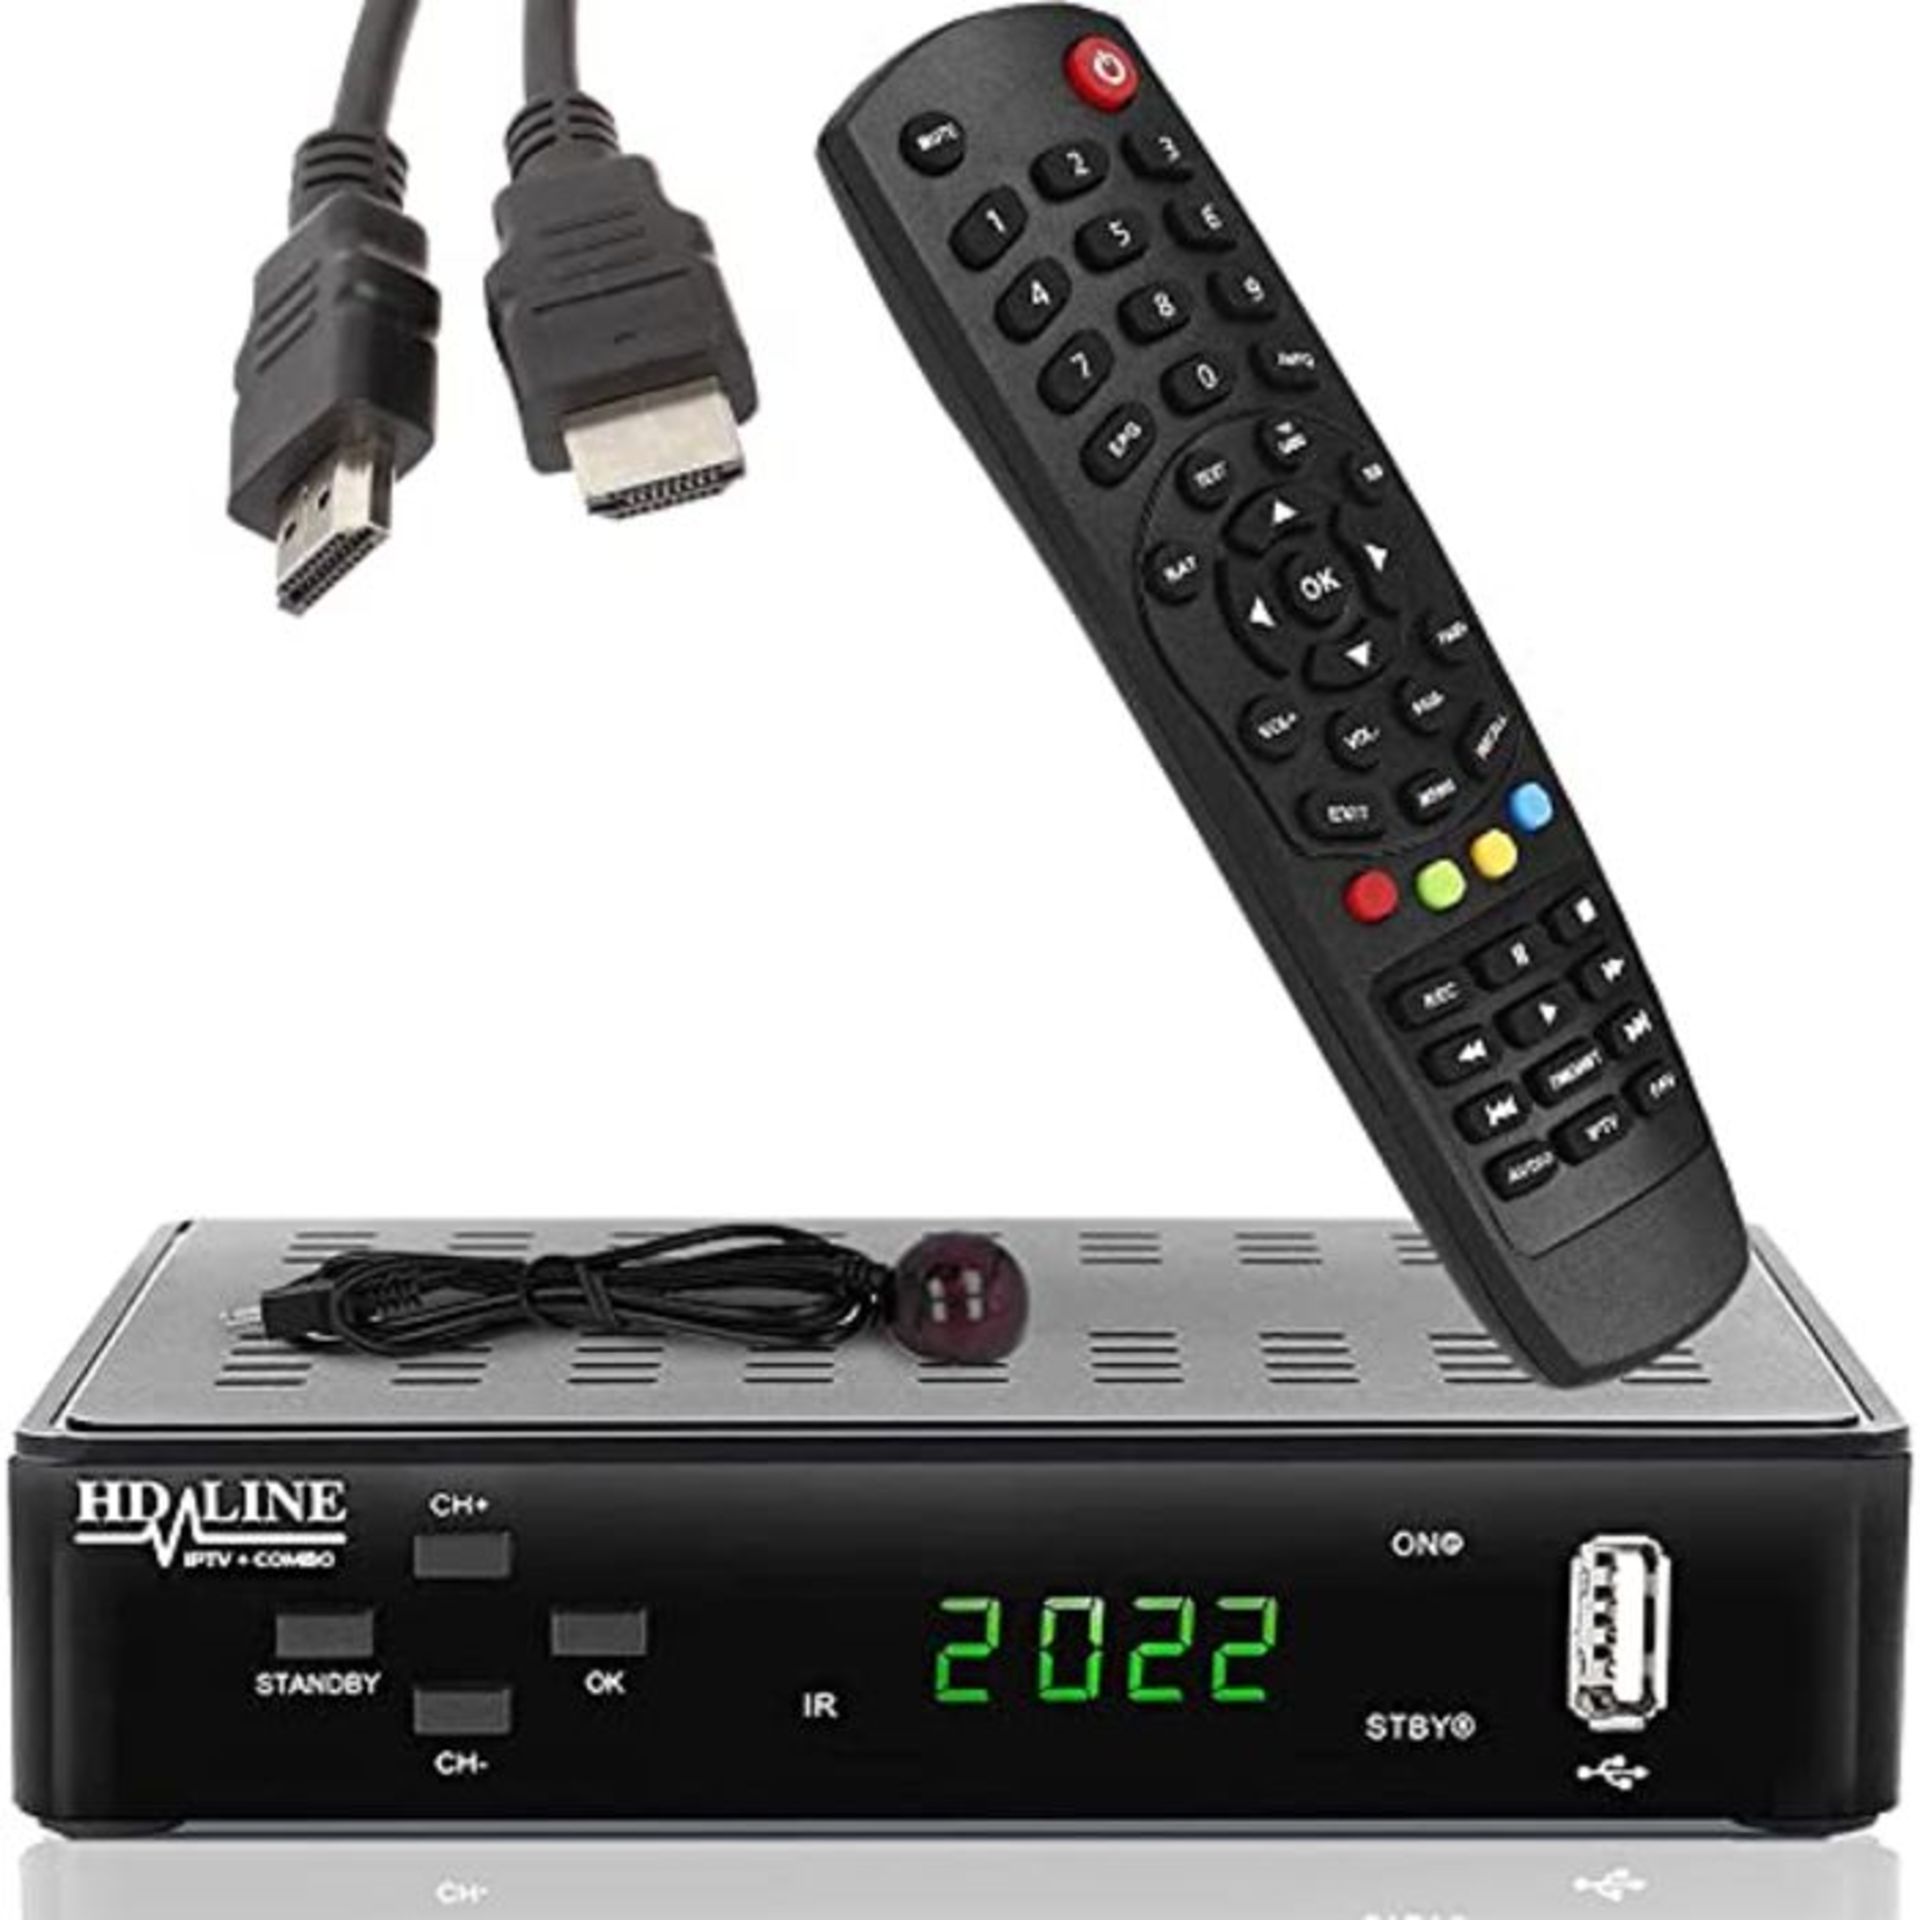 hd-line Tivusat Satelliten SAT Receiver (HDTV, WiFi, DVB-S/S2, HDMI, AV, 2X USB 2.0,)